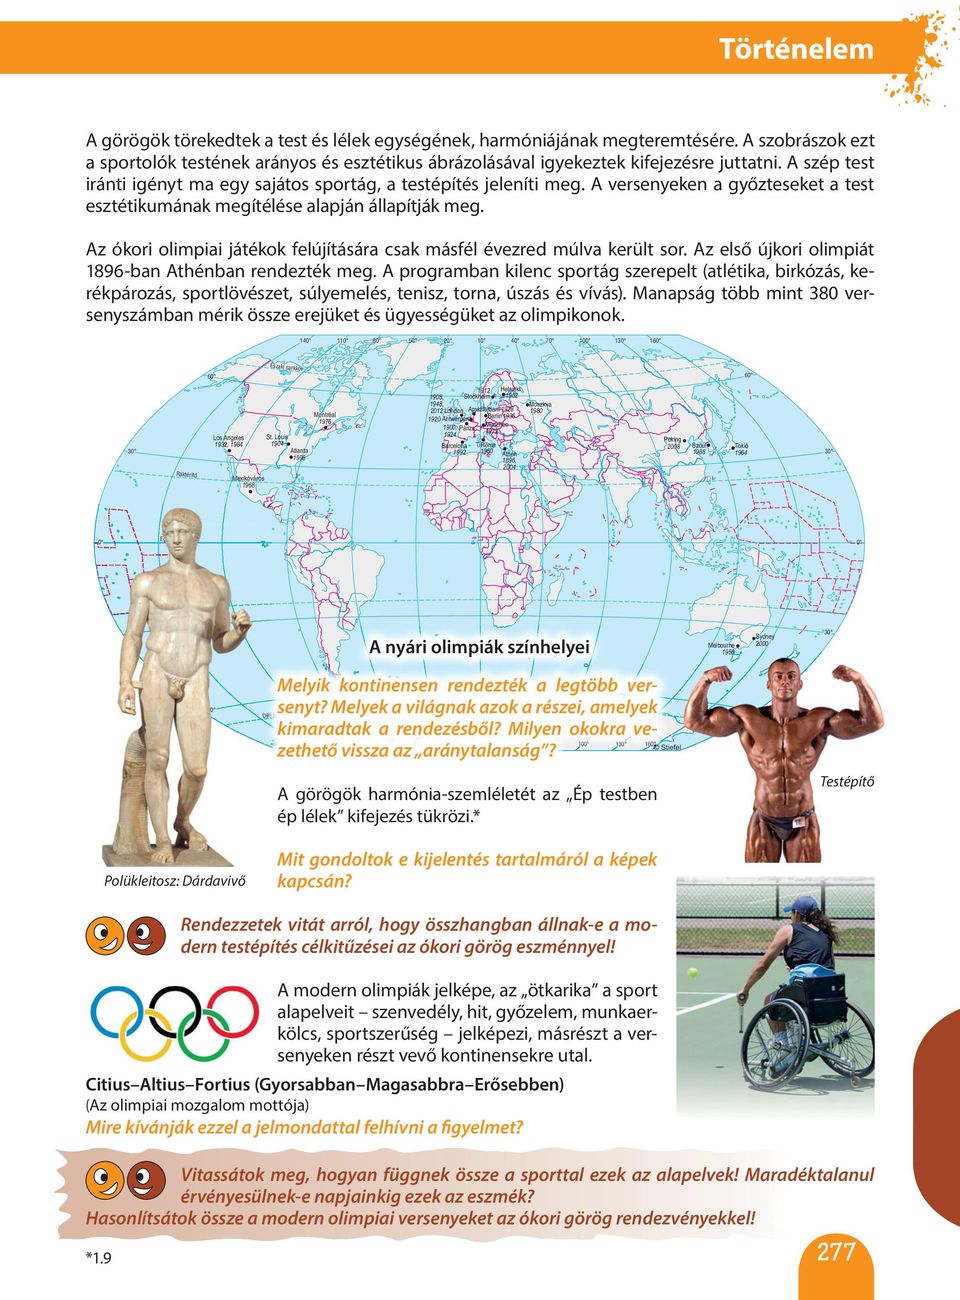 A versenyeken a győzteseket a test esztétikumának megítélése alapján állapítják meg. Az ókori olimpiai játékok felújítására csak másfél évezred múlva került sor.